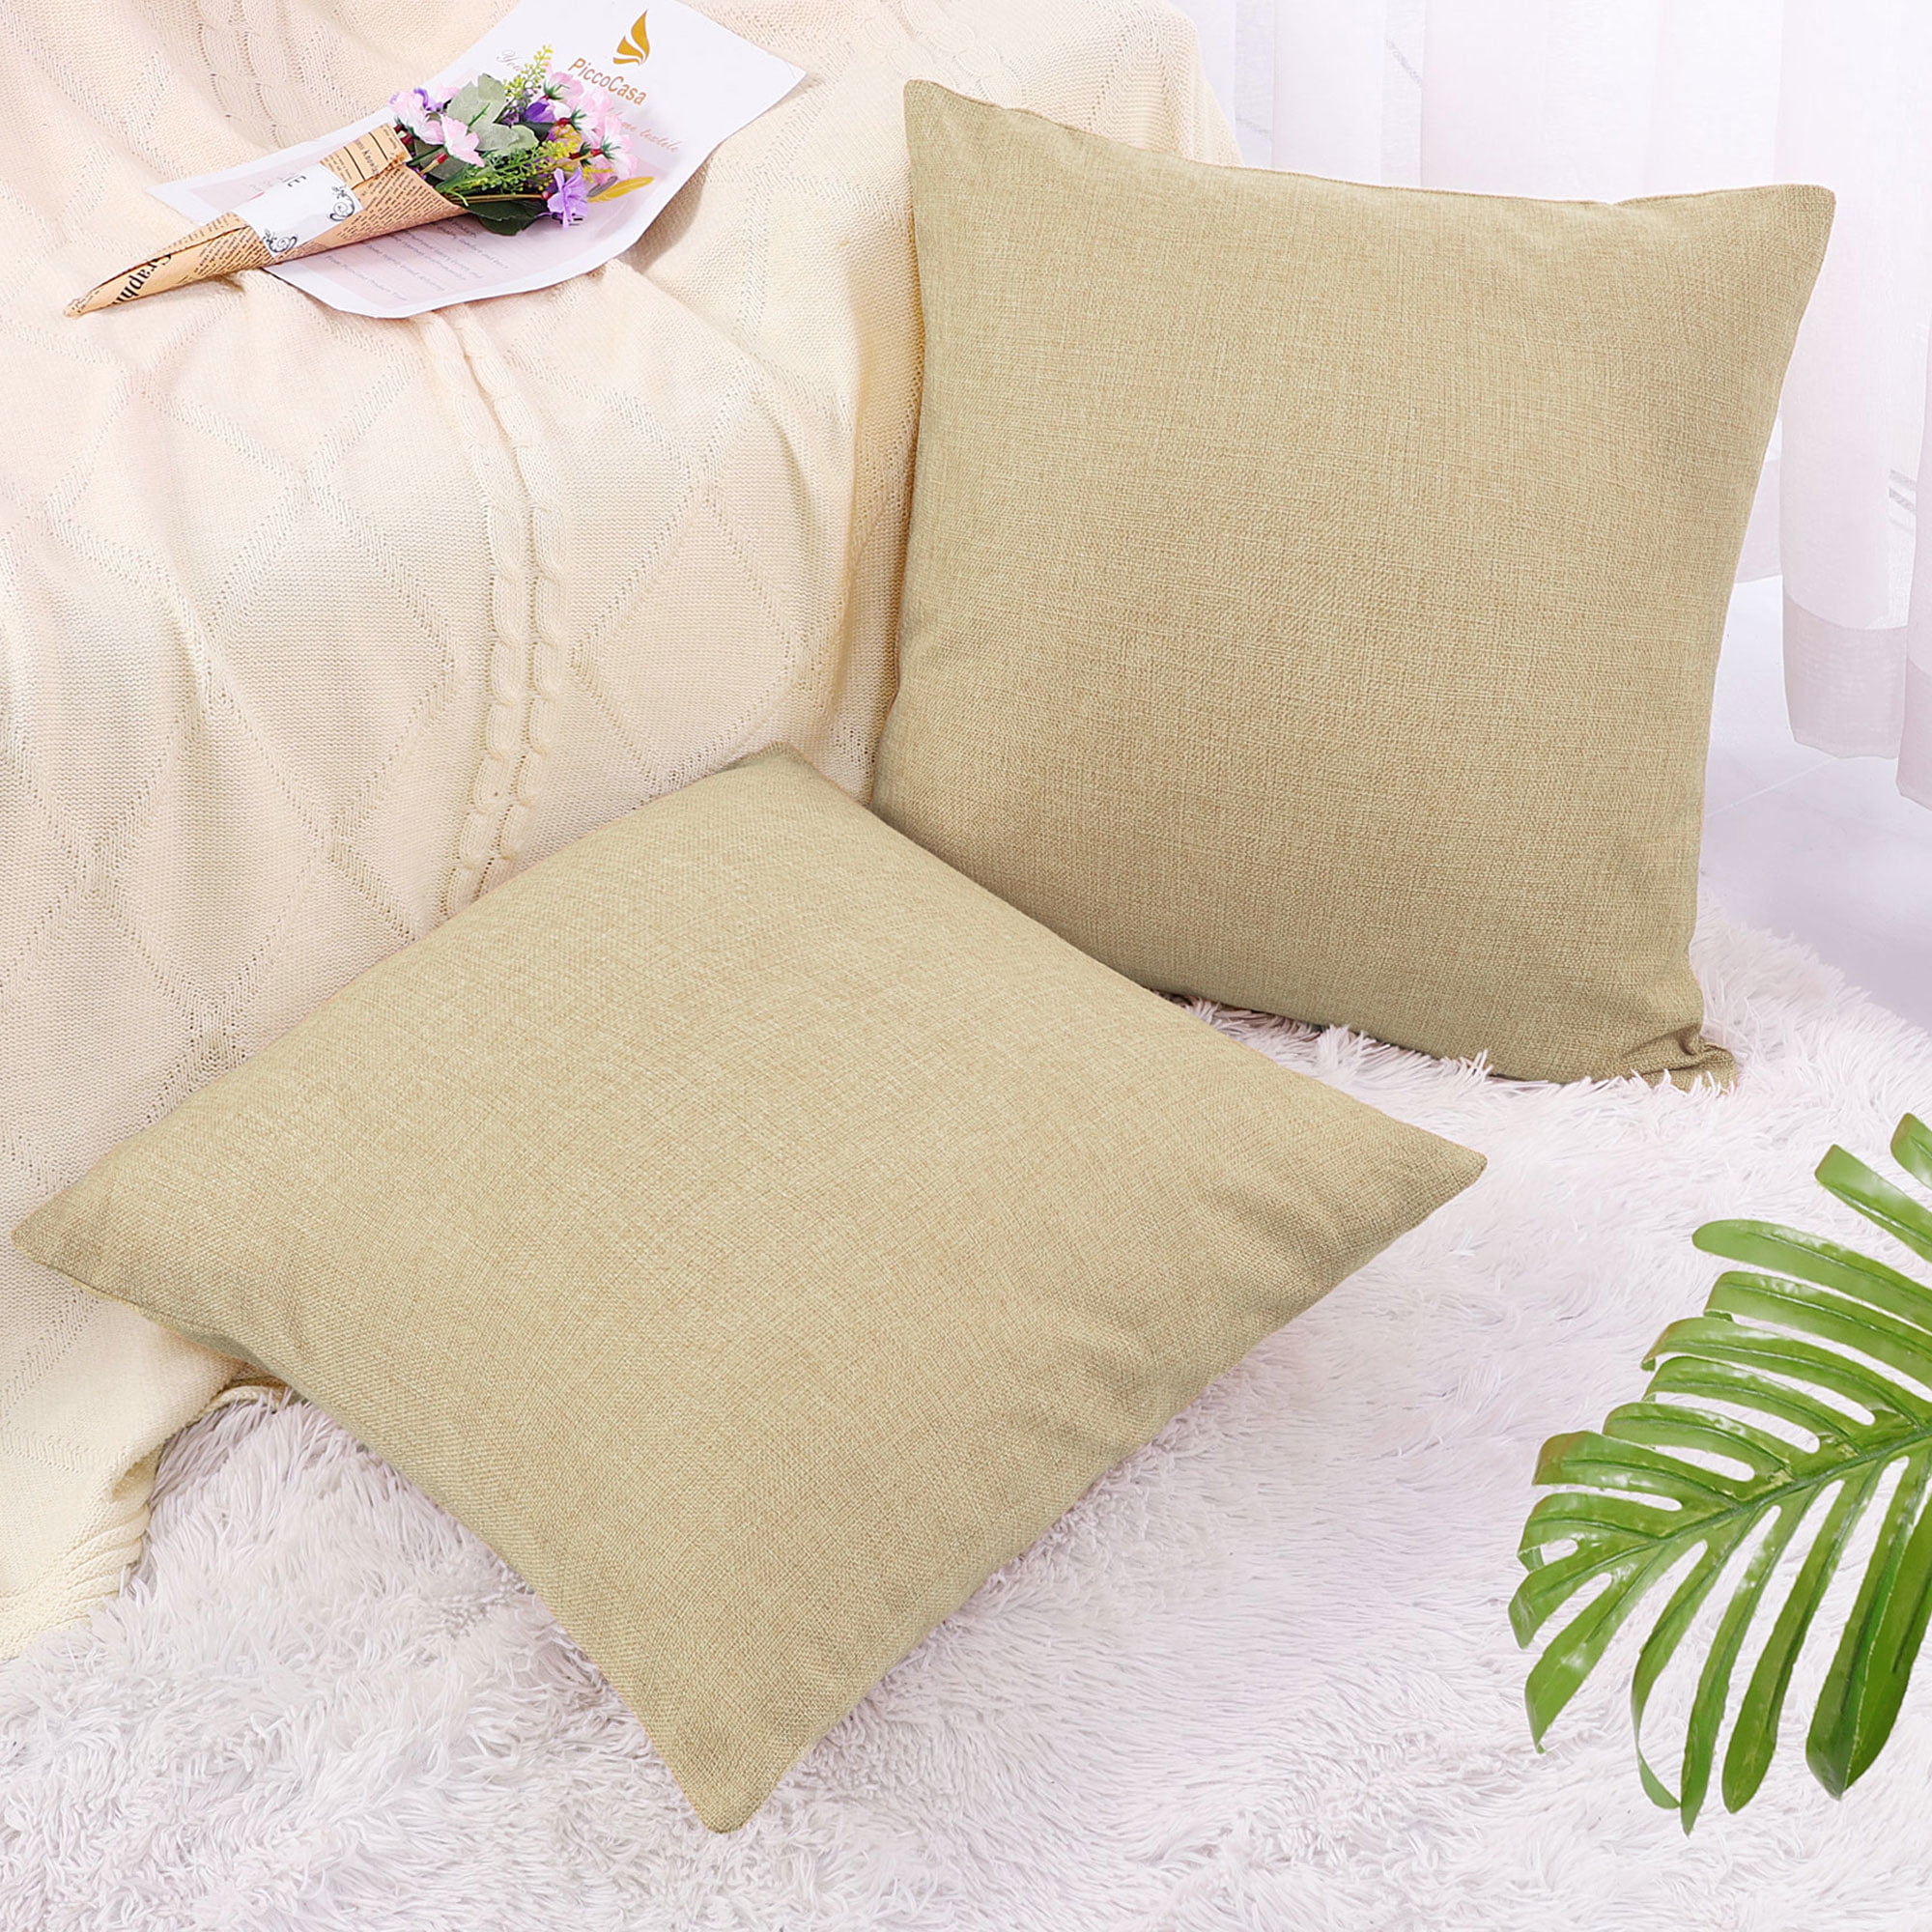 18"Retro Sea Animal Cotton Linen Pillow Case Sofa Cushion Cover Throw Home Decor 